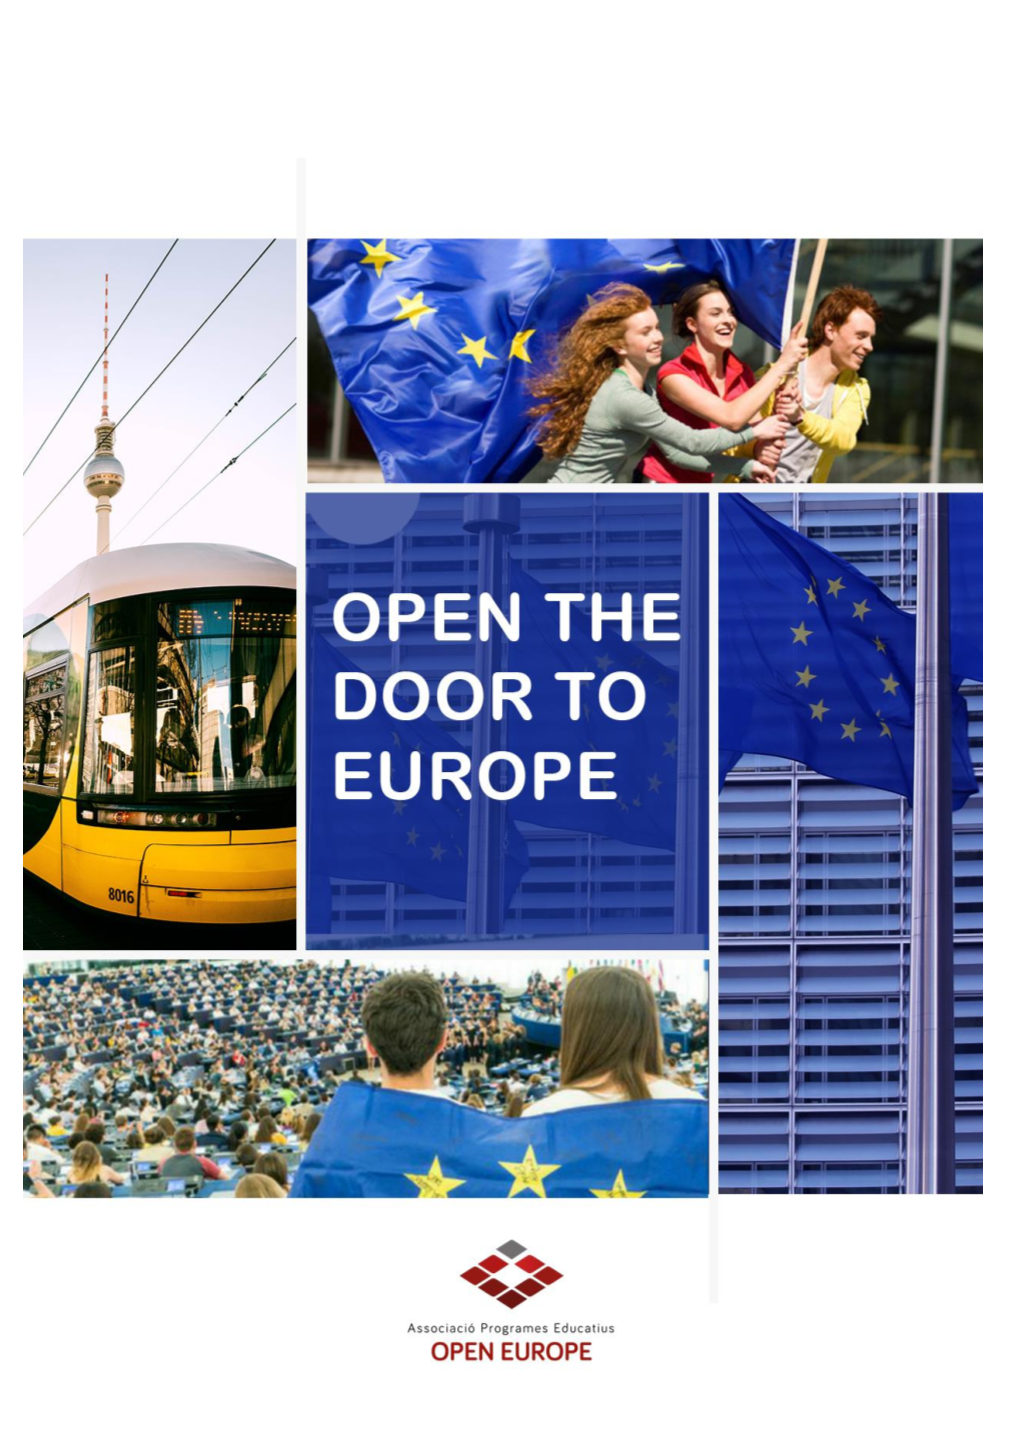 Download Open the Door to Europe Guide